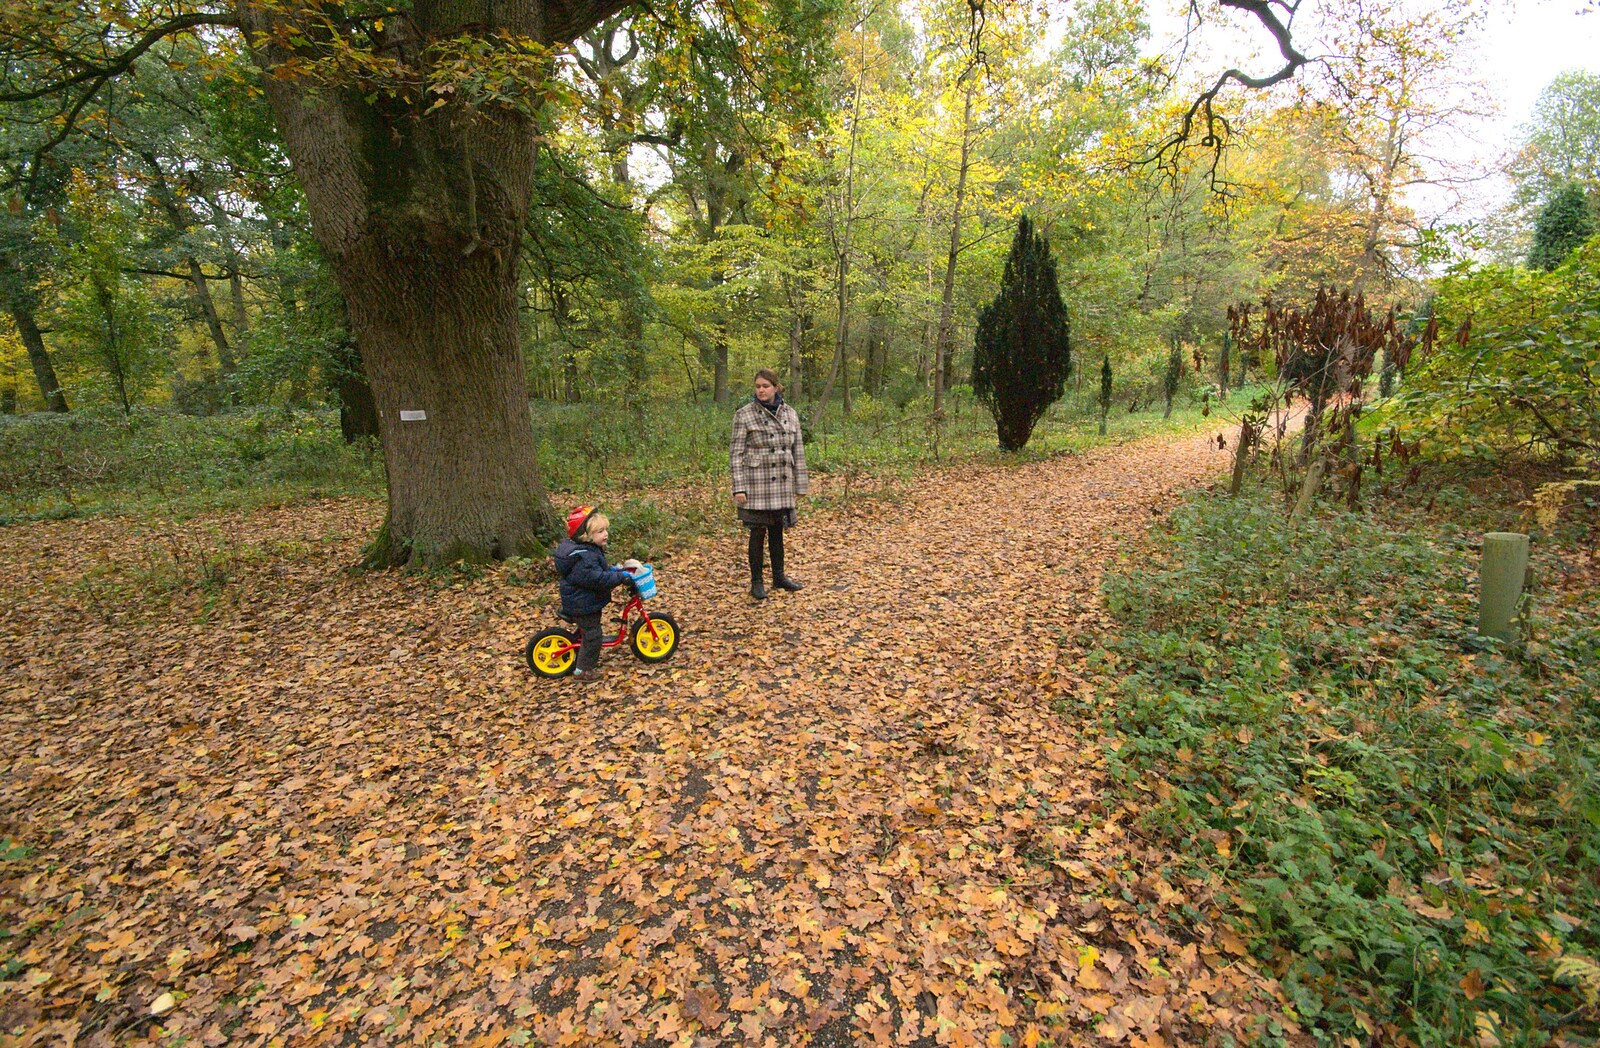 Fred and Isobel in Thornham Walks from Autumn in Thornham Estate, Thornham, Suffolk - 6th November 2011